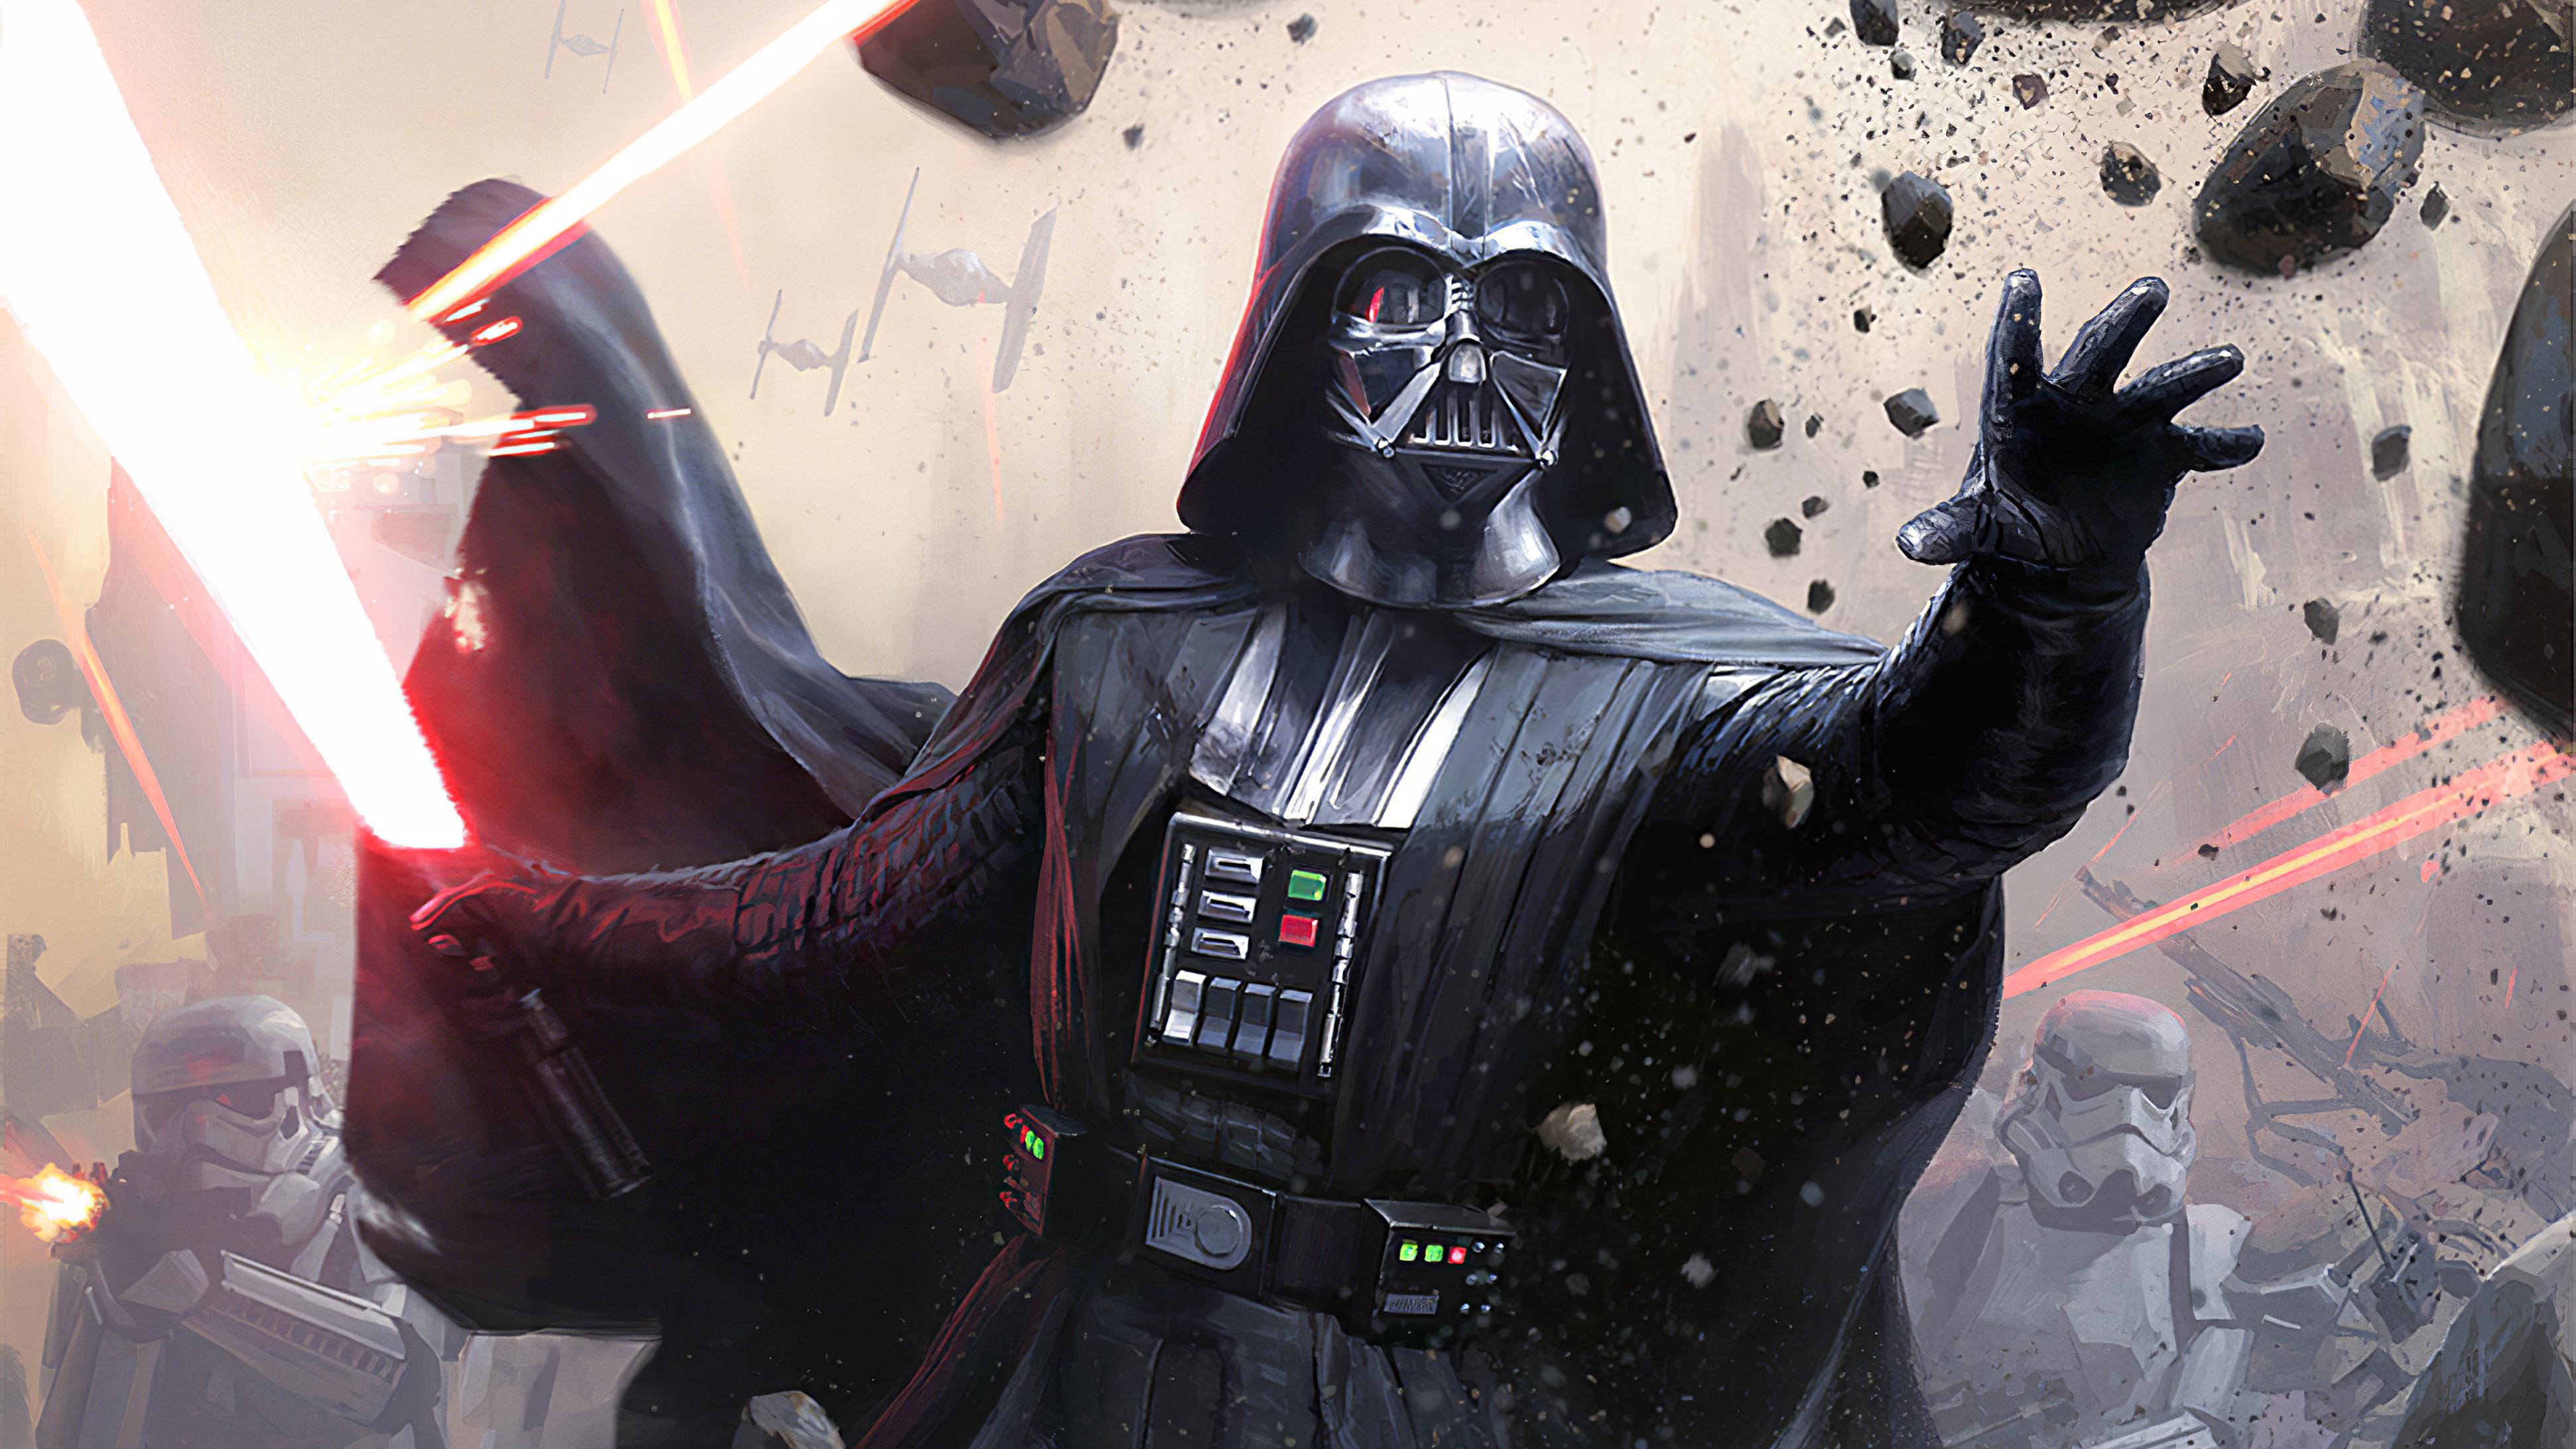 3884 x 2185 · jpeg - Darth Vader from Star Wars Wallpaper ID:4936